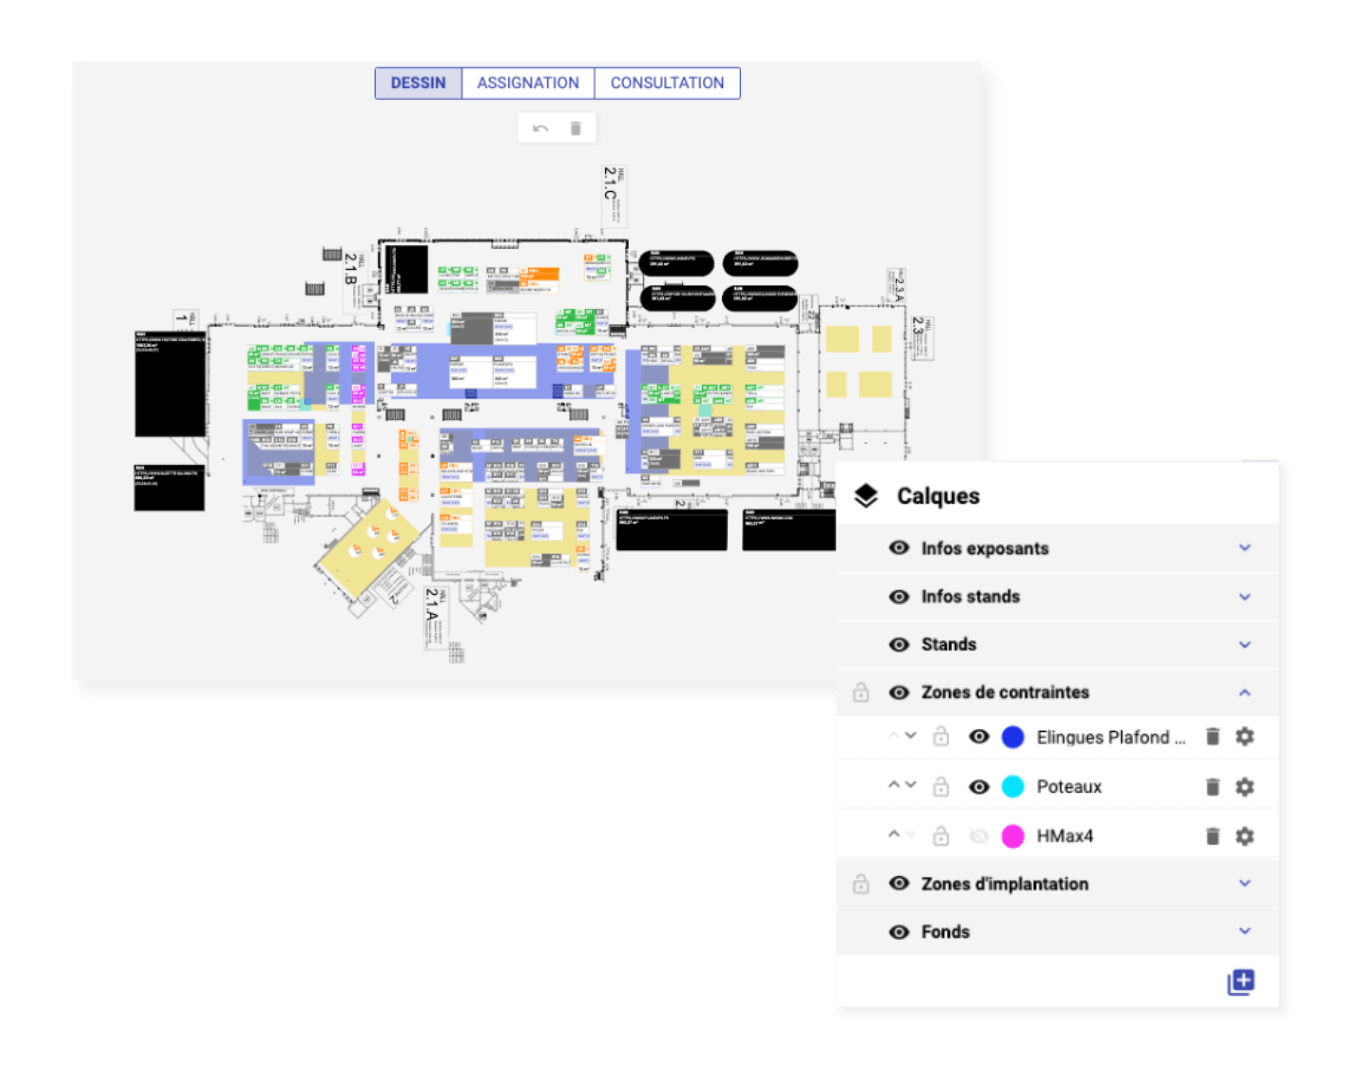 Visuel pris sur l'outil Planexpo avec un dessin de plan qui montre les différentes zones de contraintes d'installation. On voit également la modale qui permet d'afficher ou non les couleurs de ces délimitations.